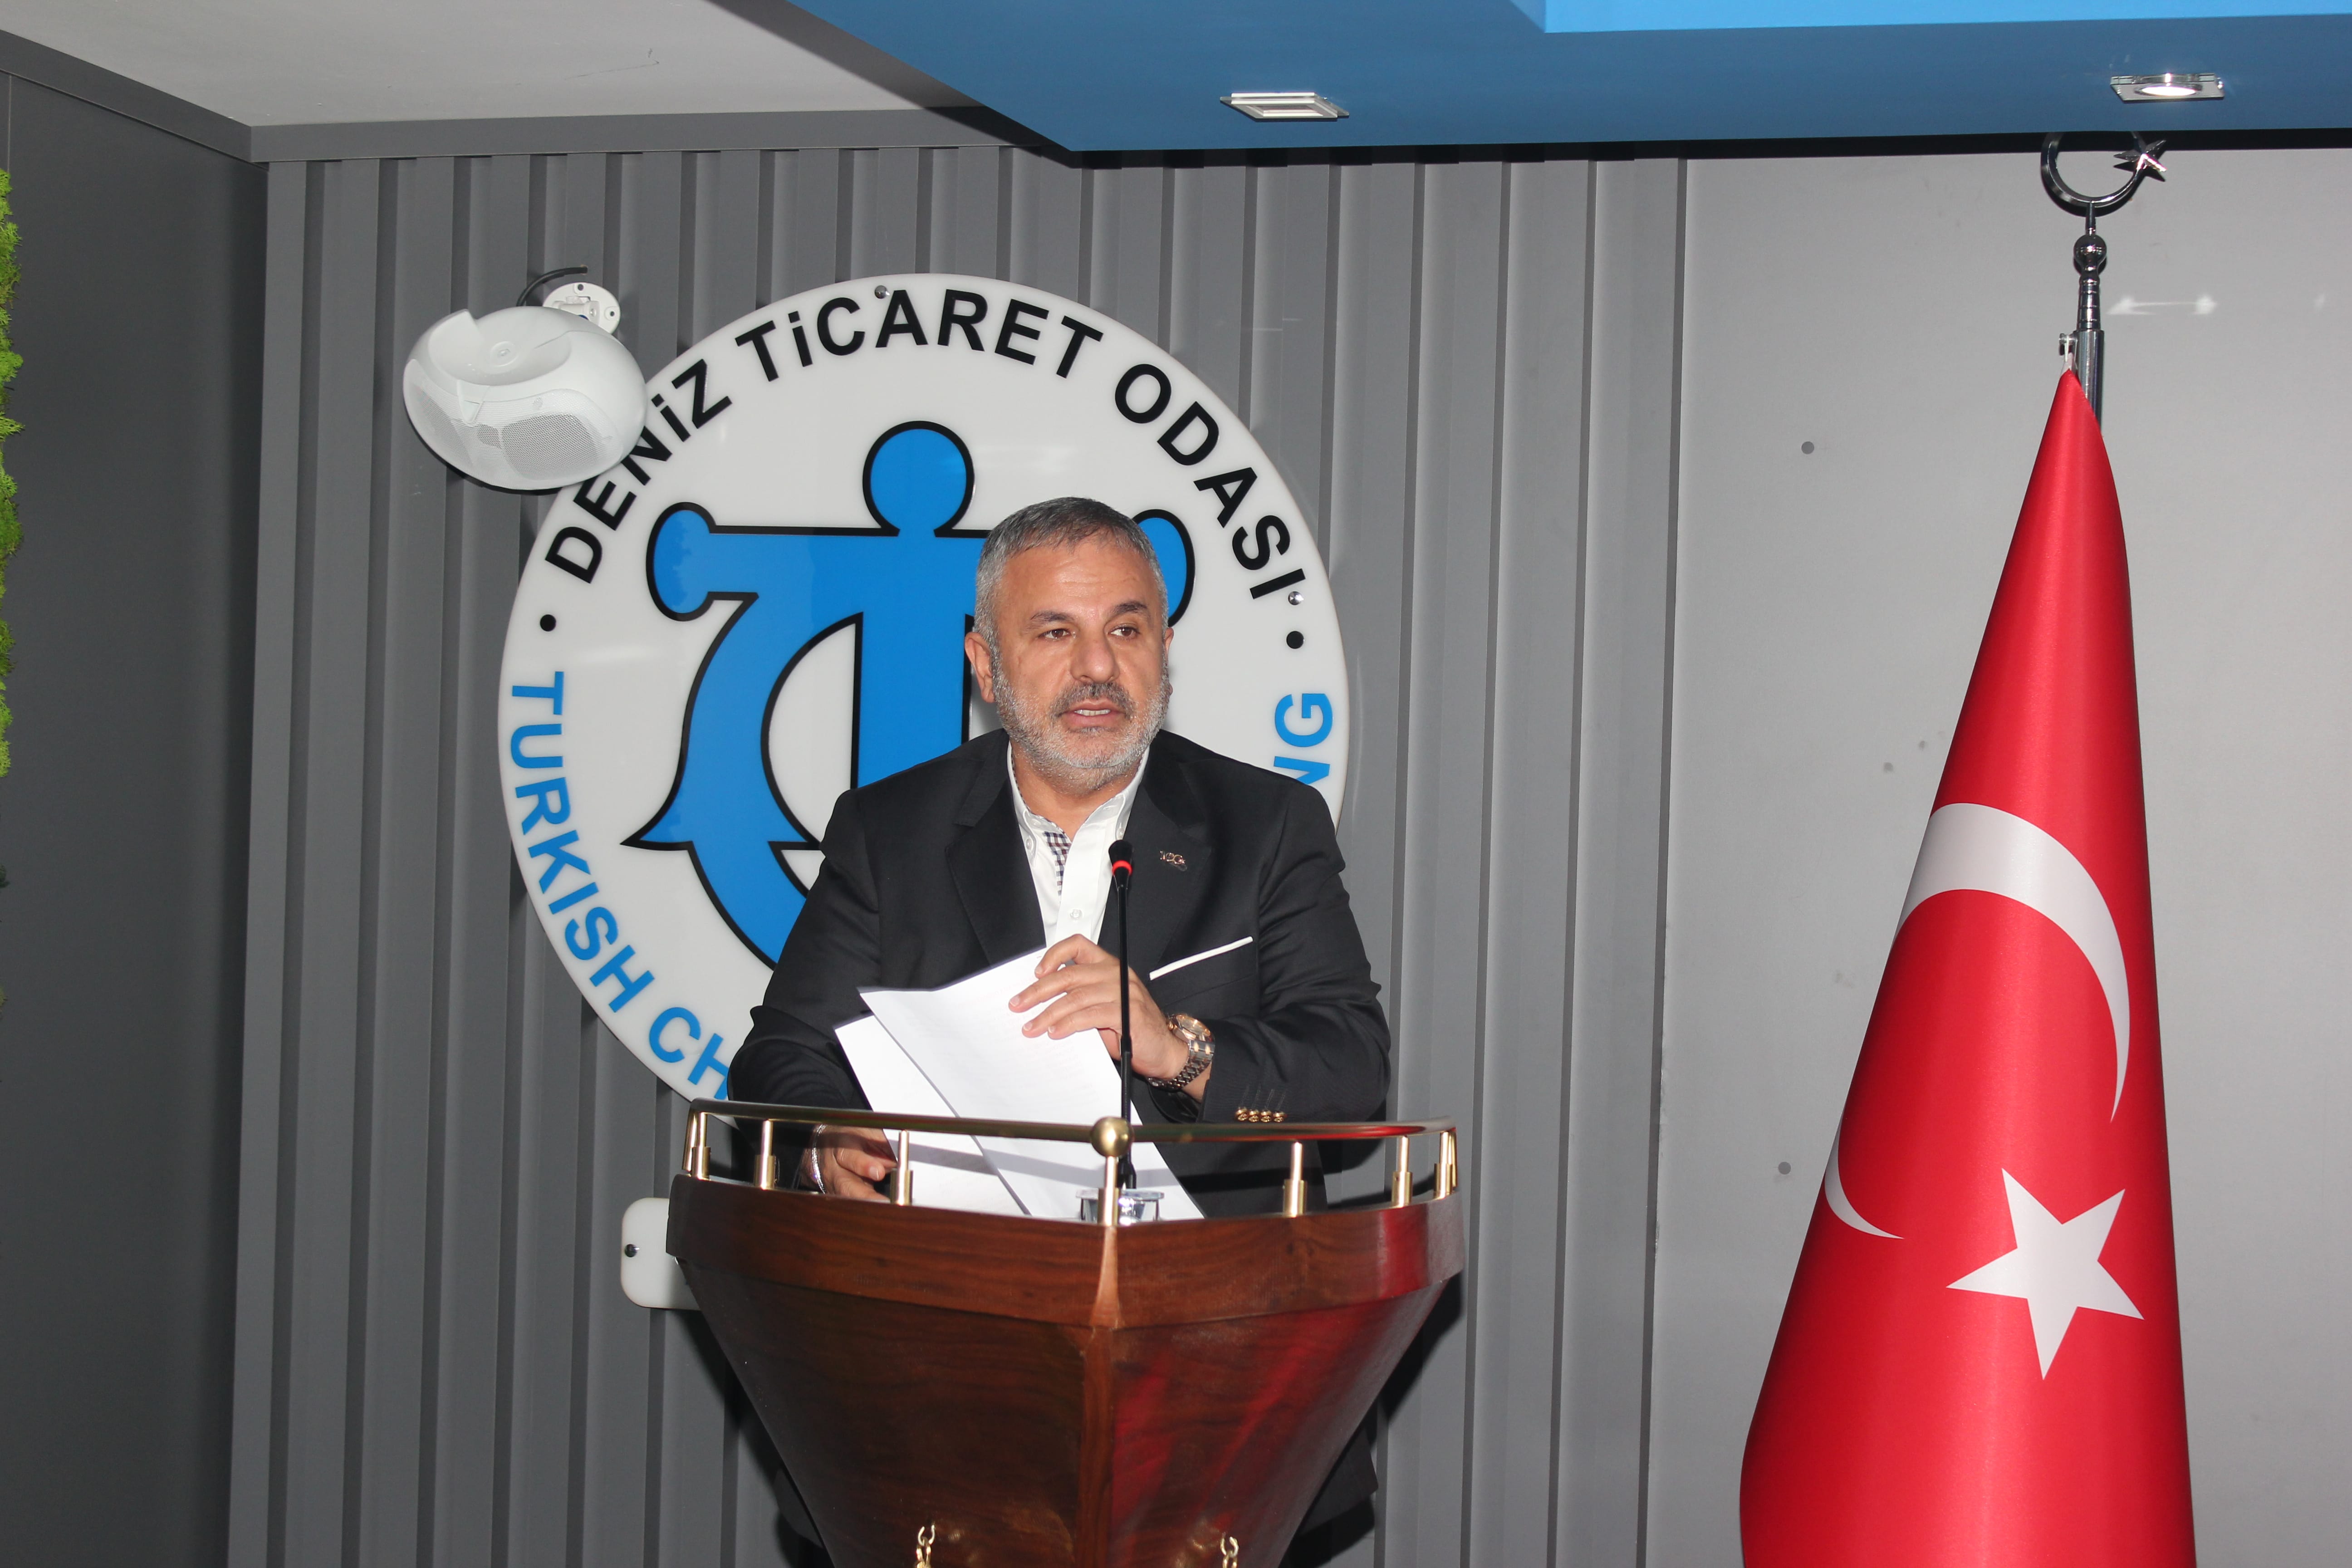 Adem Şimşek «Μια νέα εποχή ξεκινά για τον τουριστικό τομέα» |  Εφημερίδα Özgürses |  Aliağa News – Νέα Νέα – Νέα από τον επιχειρηματικό κόσμο